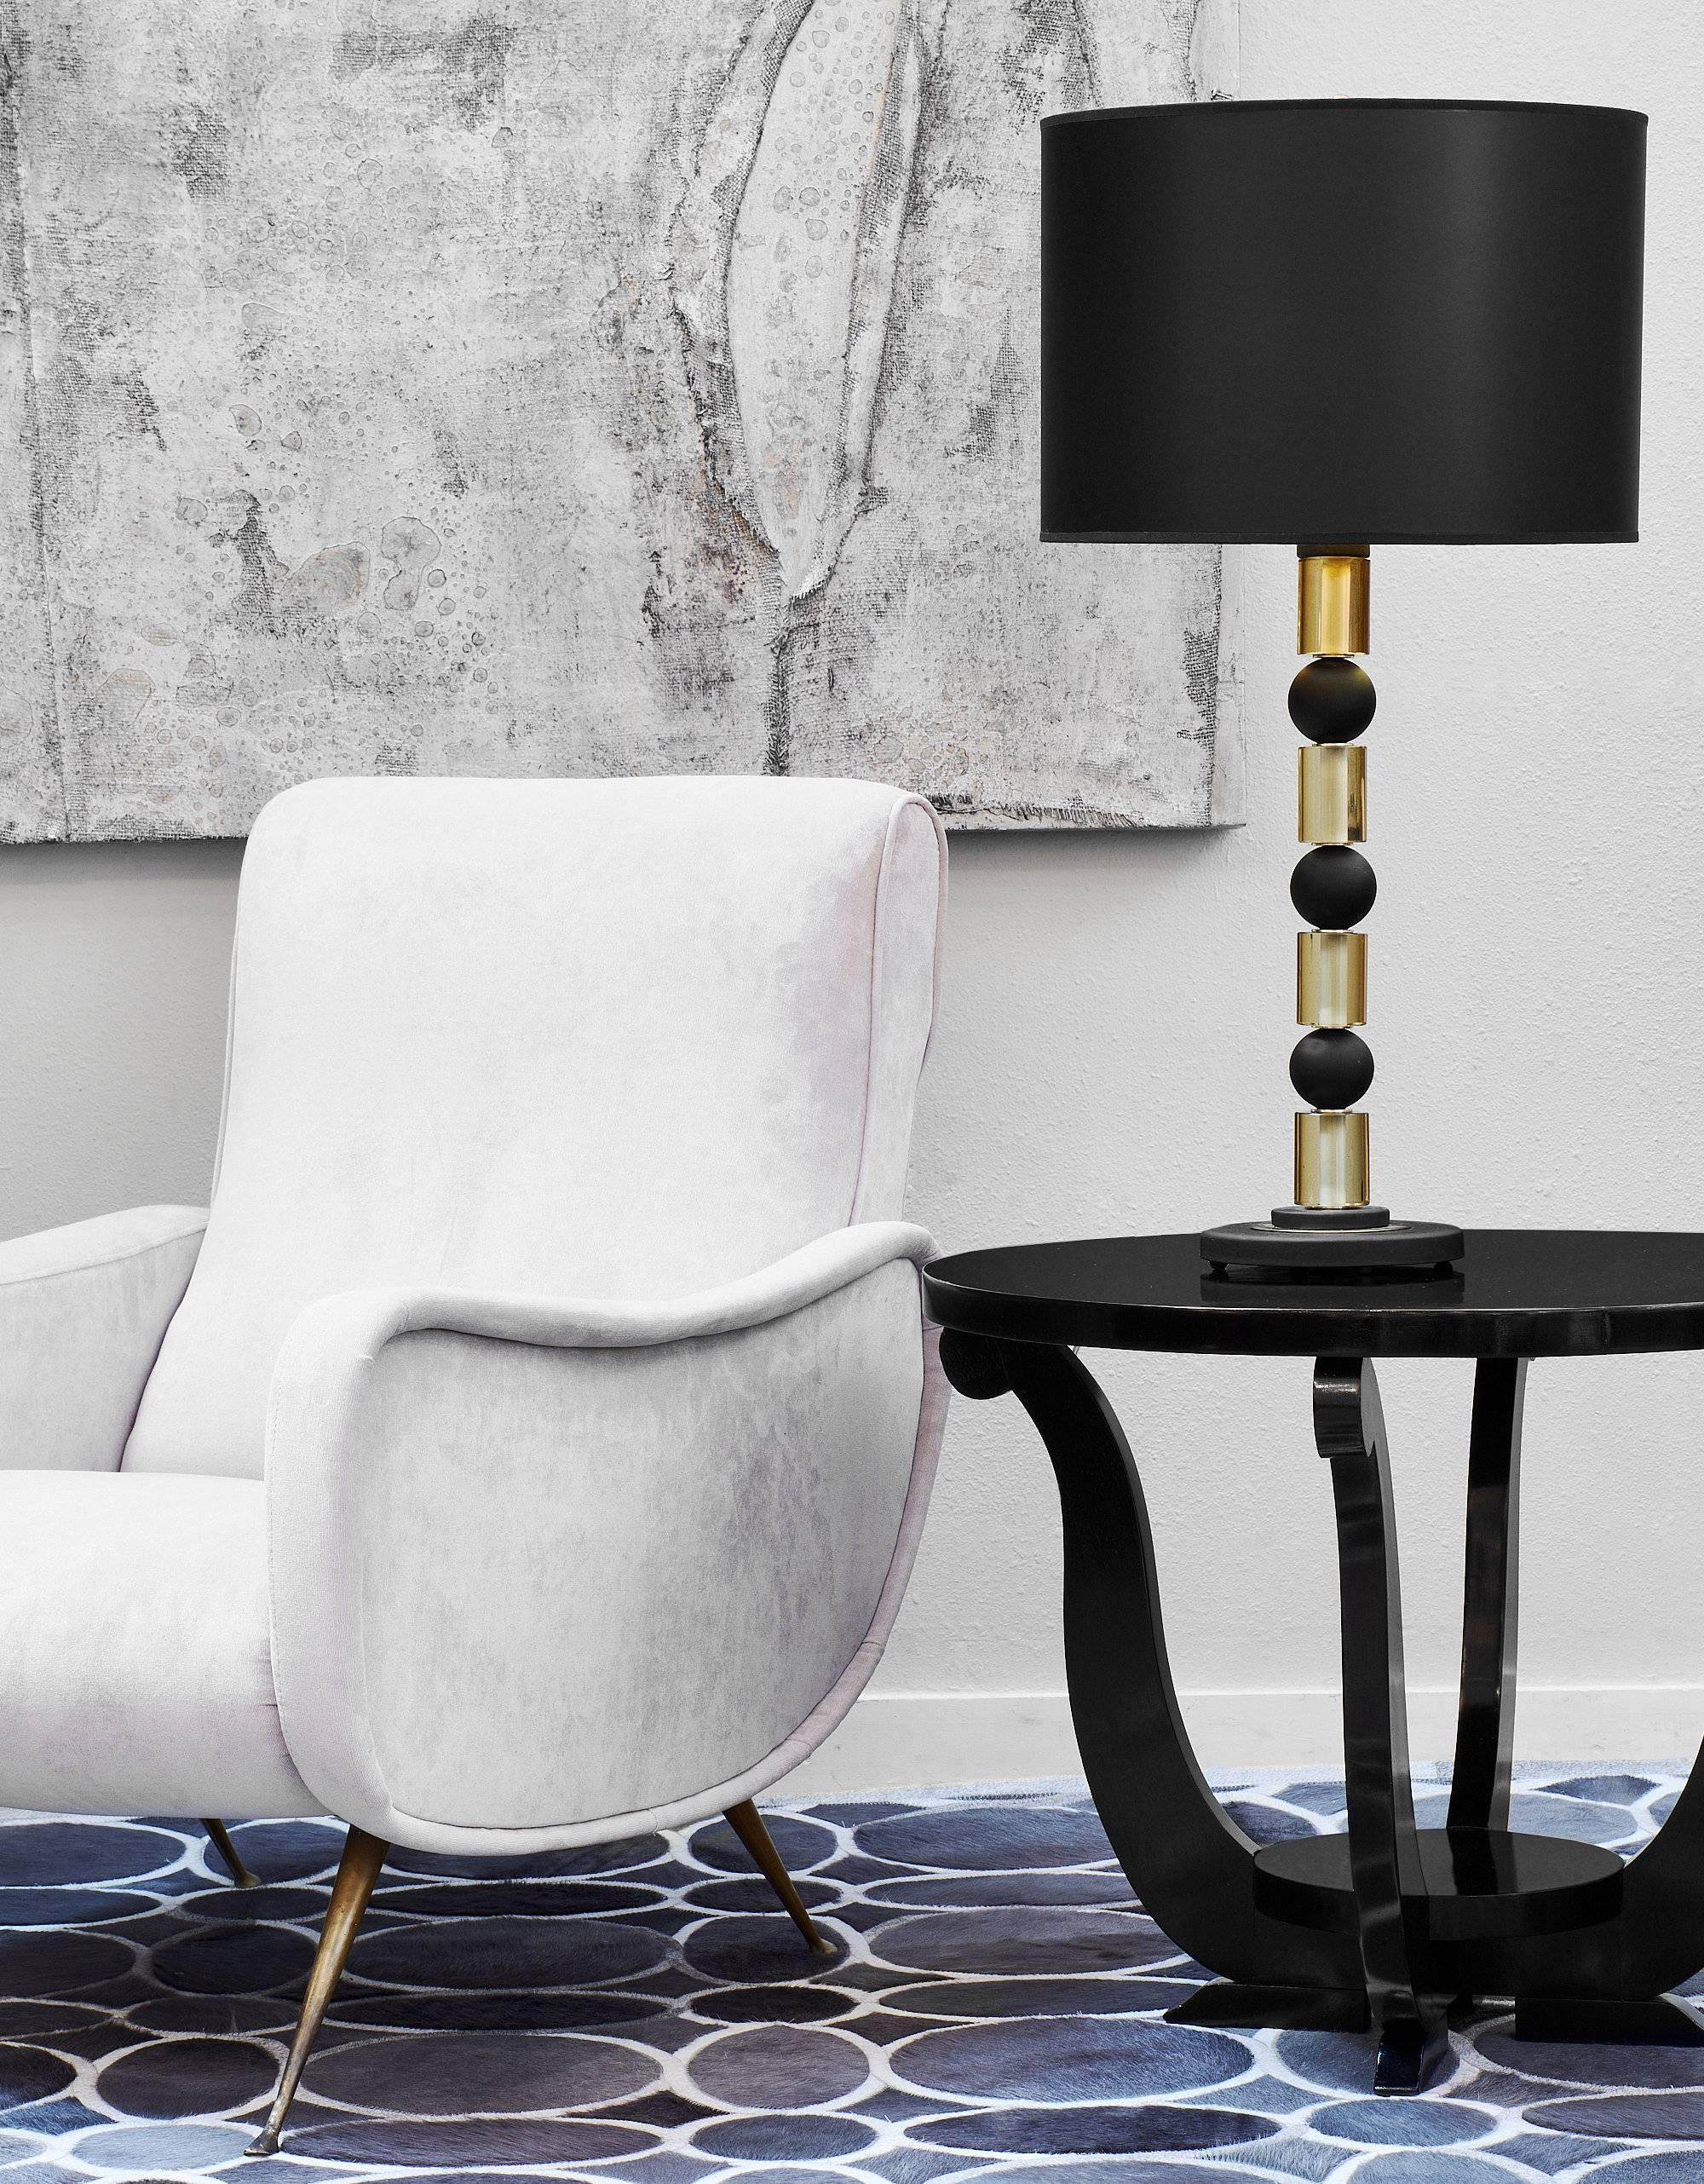 Ces lampes de table épurées et modernes en verre de Murano présentent une alternance de sphères noires solides et de cylindres en verre doré ambré. Ces magnifiques paires sont dotées d'épaisses bases rondes en verre et témoignent d'une très grande